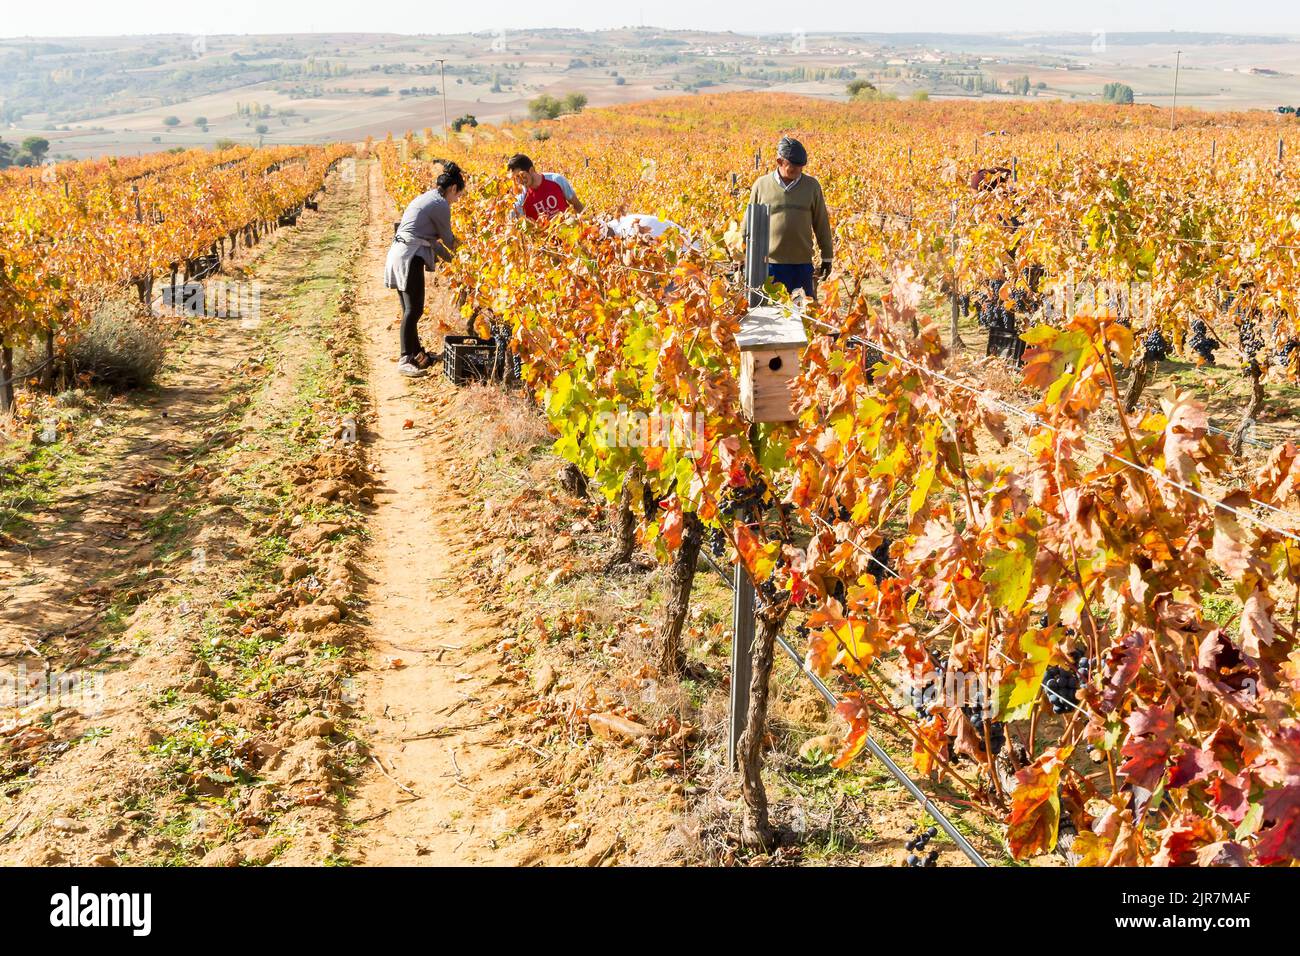 La vigna viene raccolta dai lavoratori durante la campagna di raccolta a Toro, Zamora, Spagna. Foto Stock